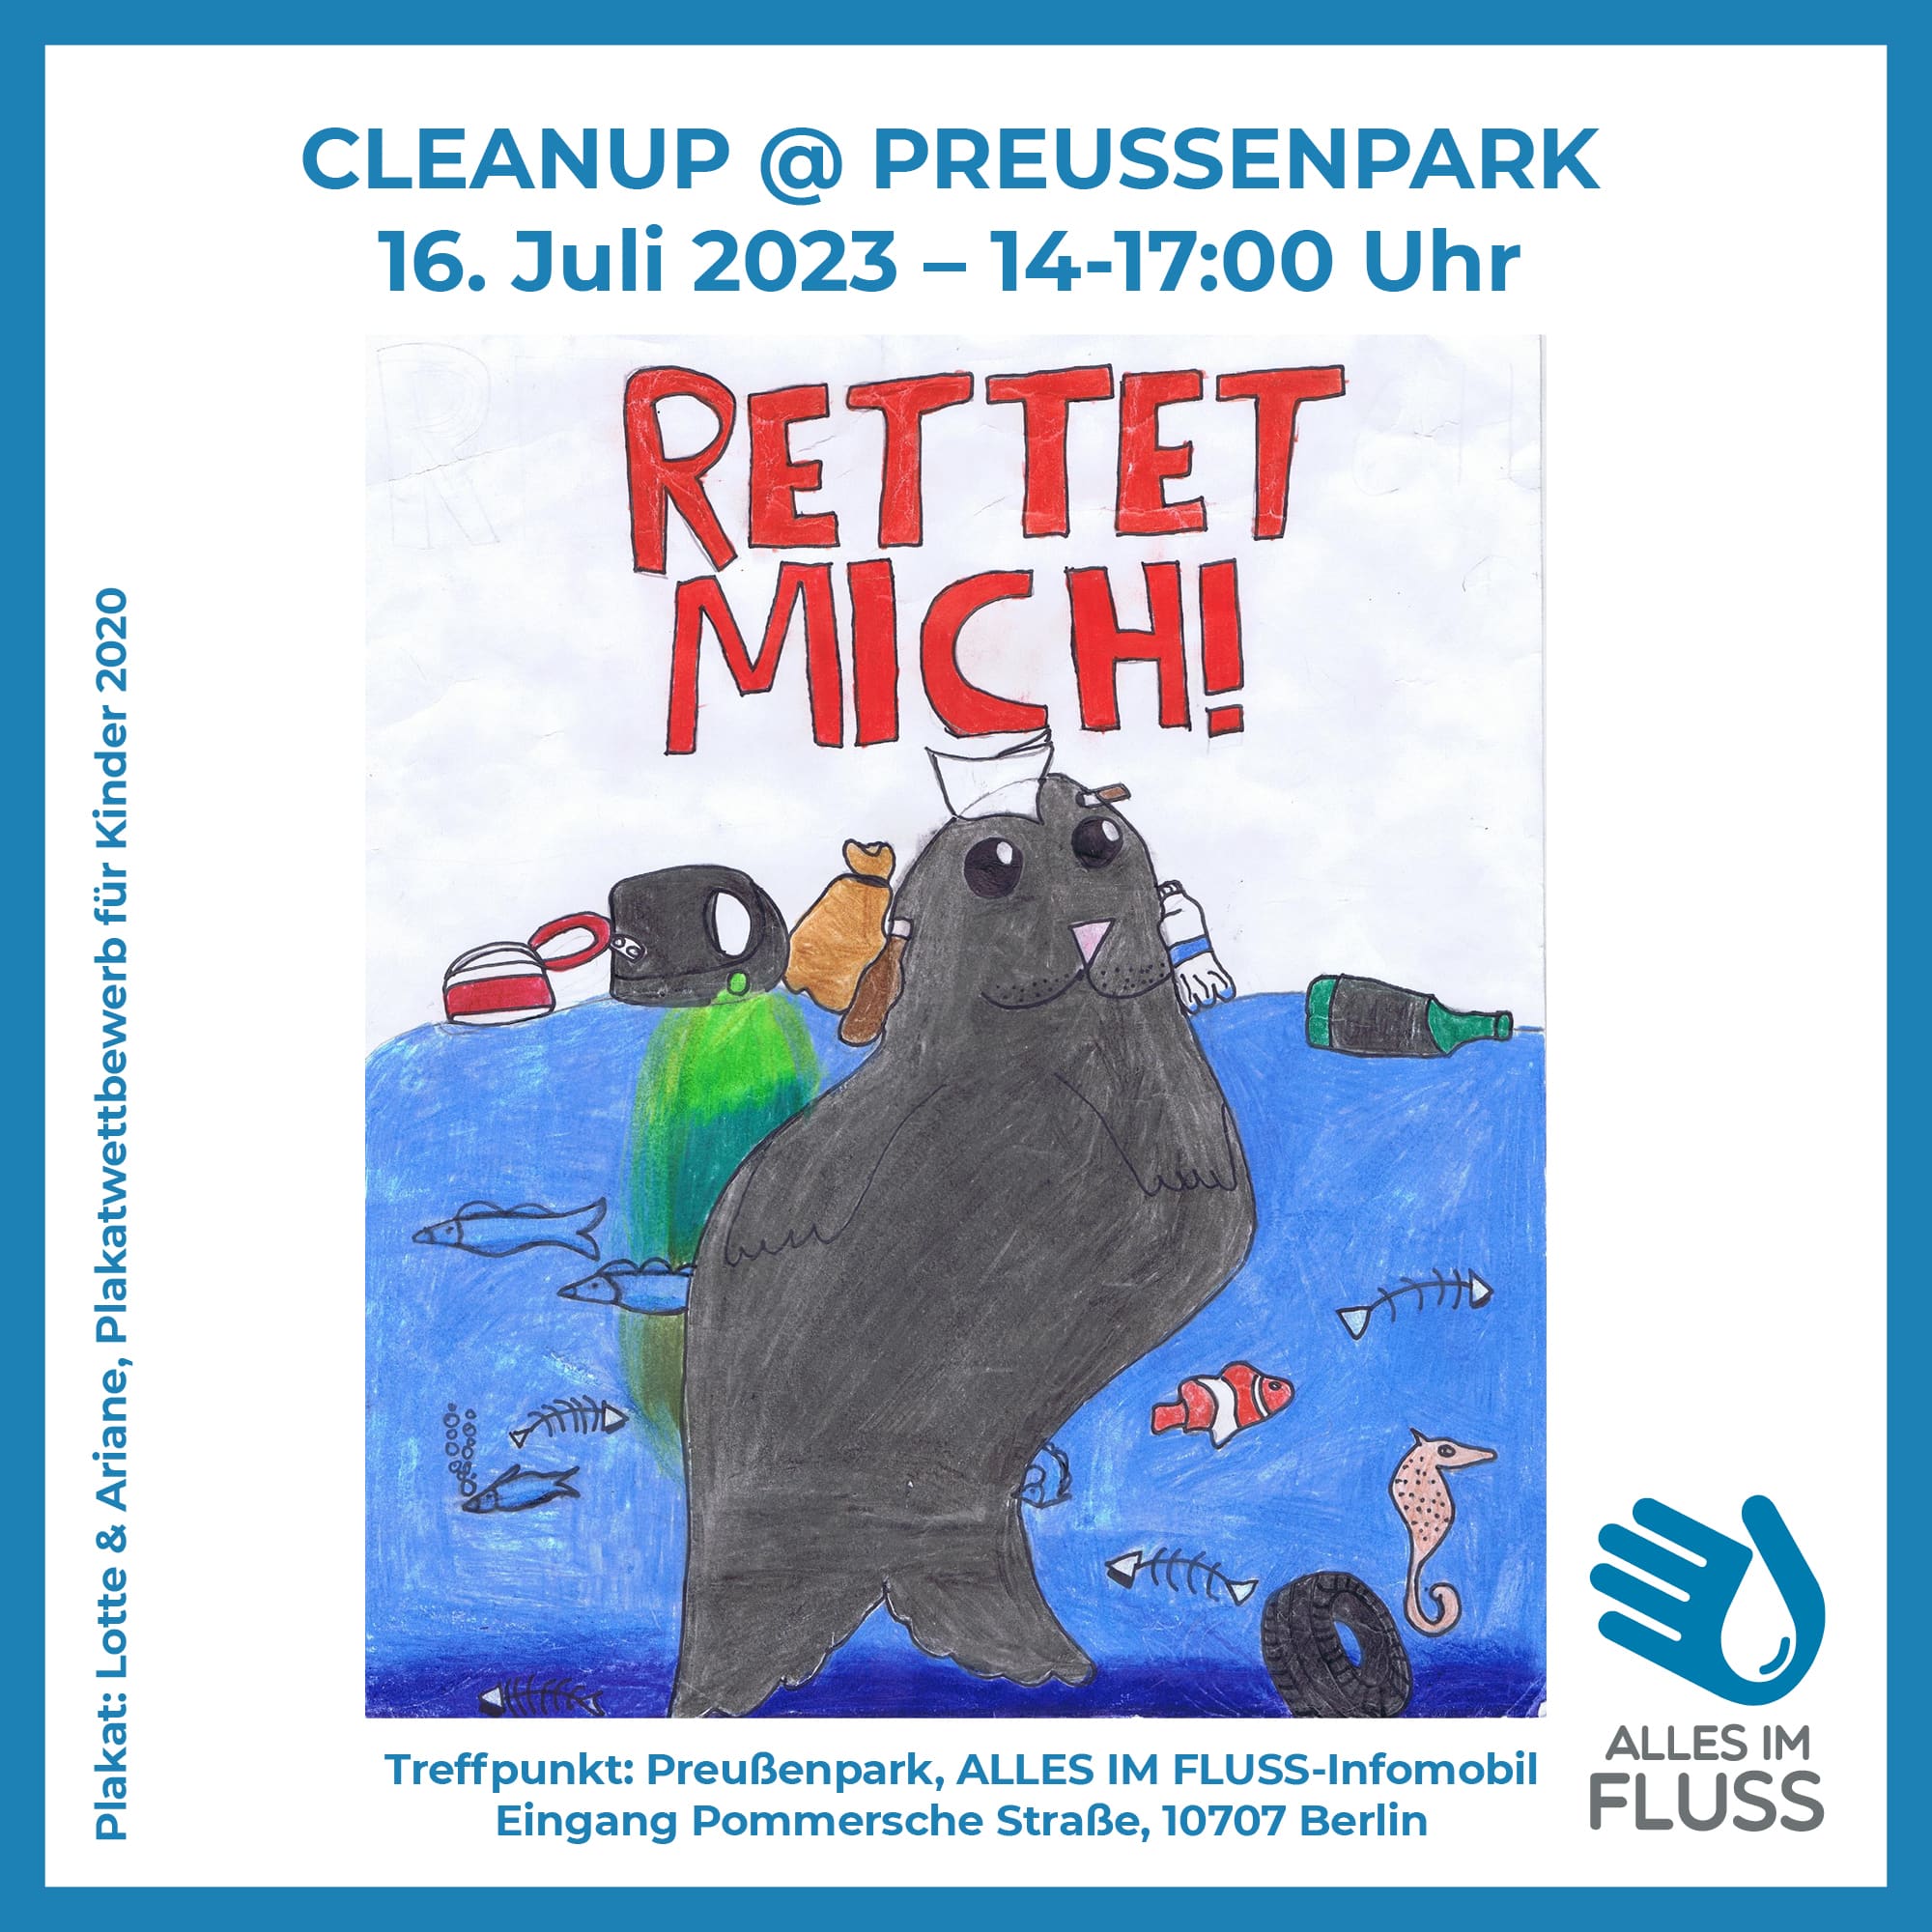 AIF Cleanup am 16. Juli von 14 bis 17 Uhr im Preußenpark